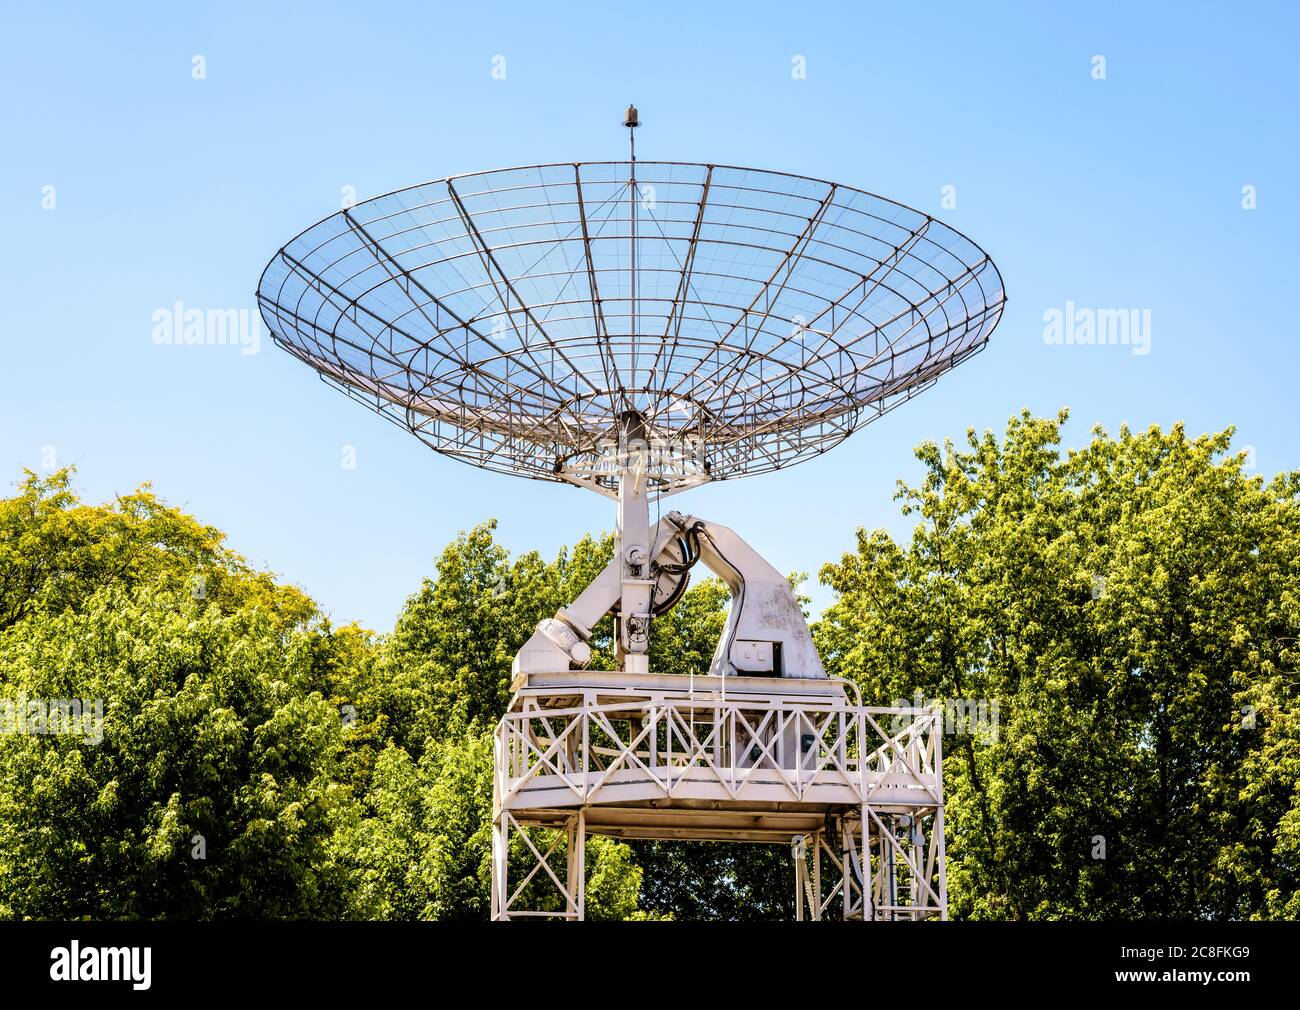 Le radiotélescope de 10 mètres dans le parc de la Villette à Paris, en France, contre le ciel bleu. Banque D'Images